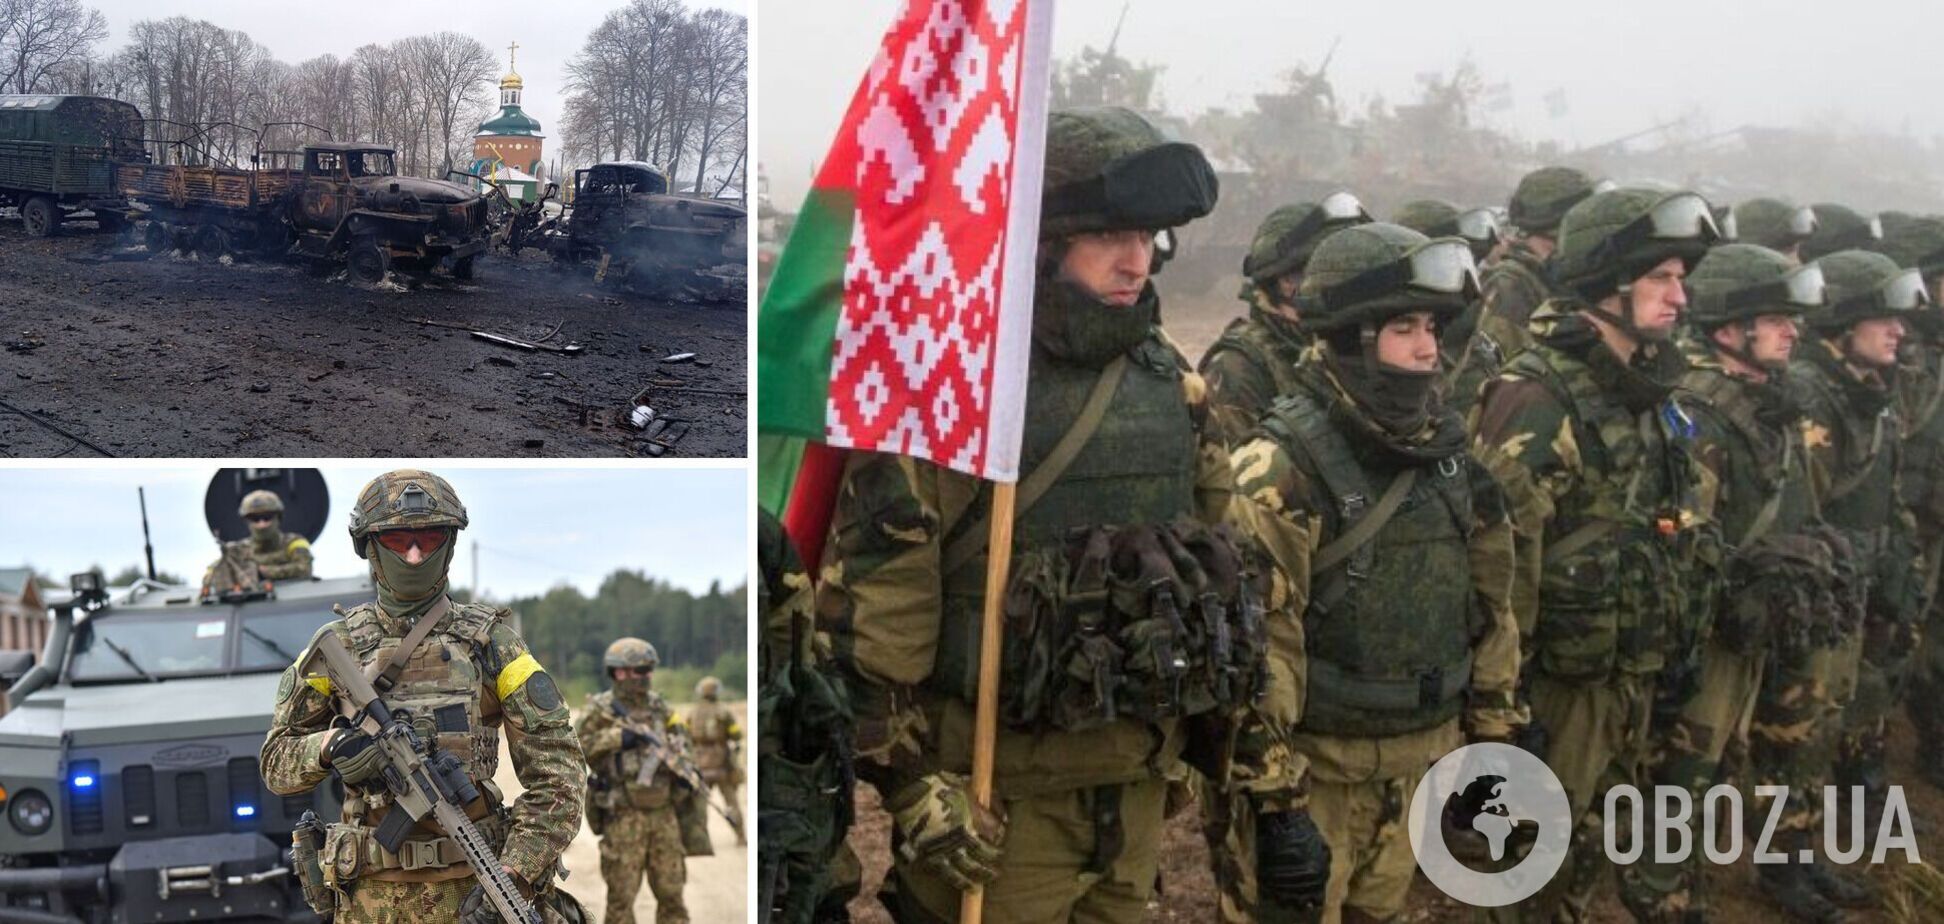 Білорусь привела війська в боєздатність, а РФ готує інформаційну спецоперацію – Міноборони України